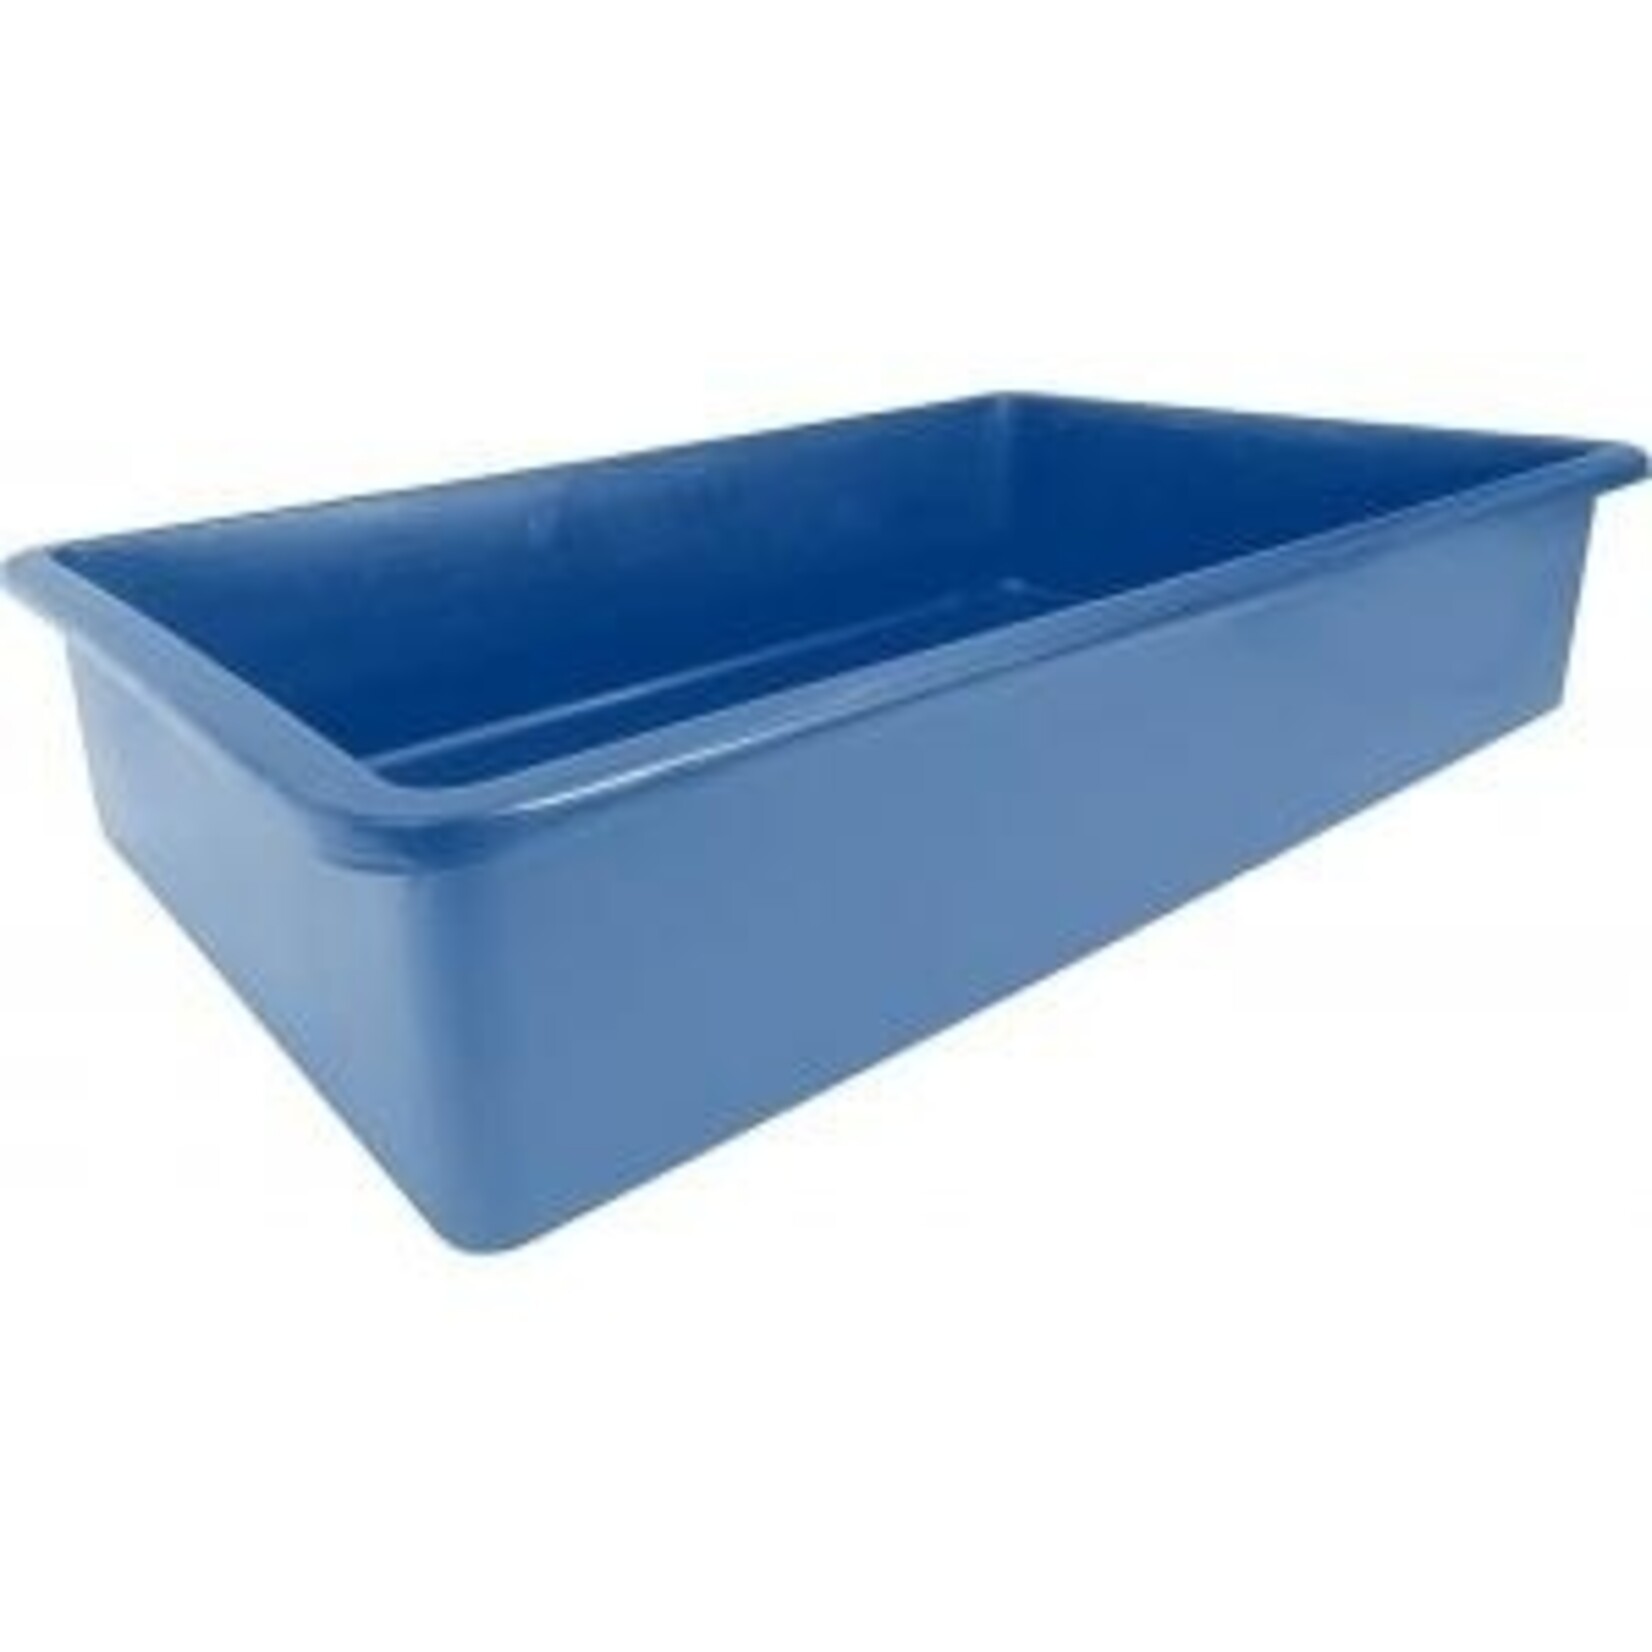 Ubbink Victoria Quadro 7 blauw container 980 liter